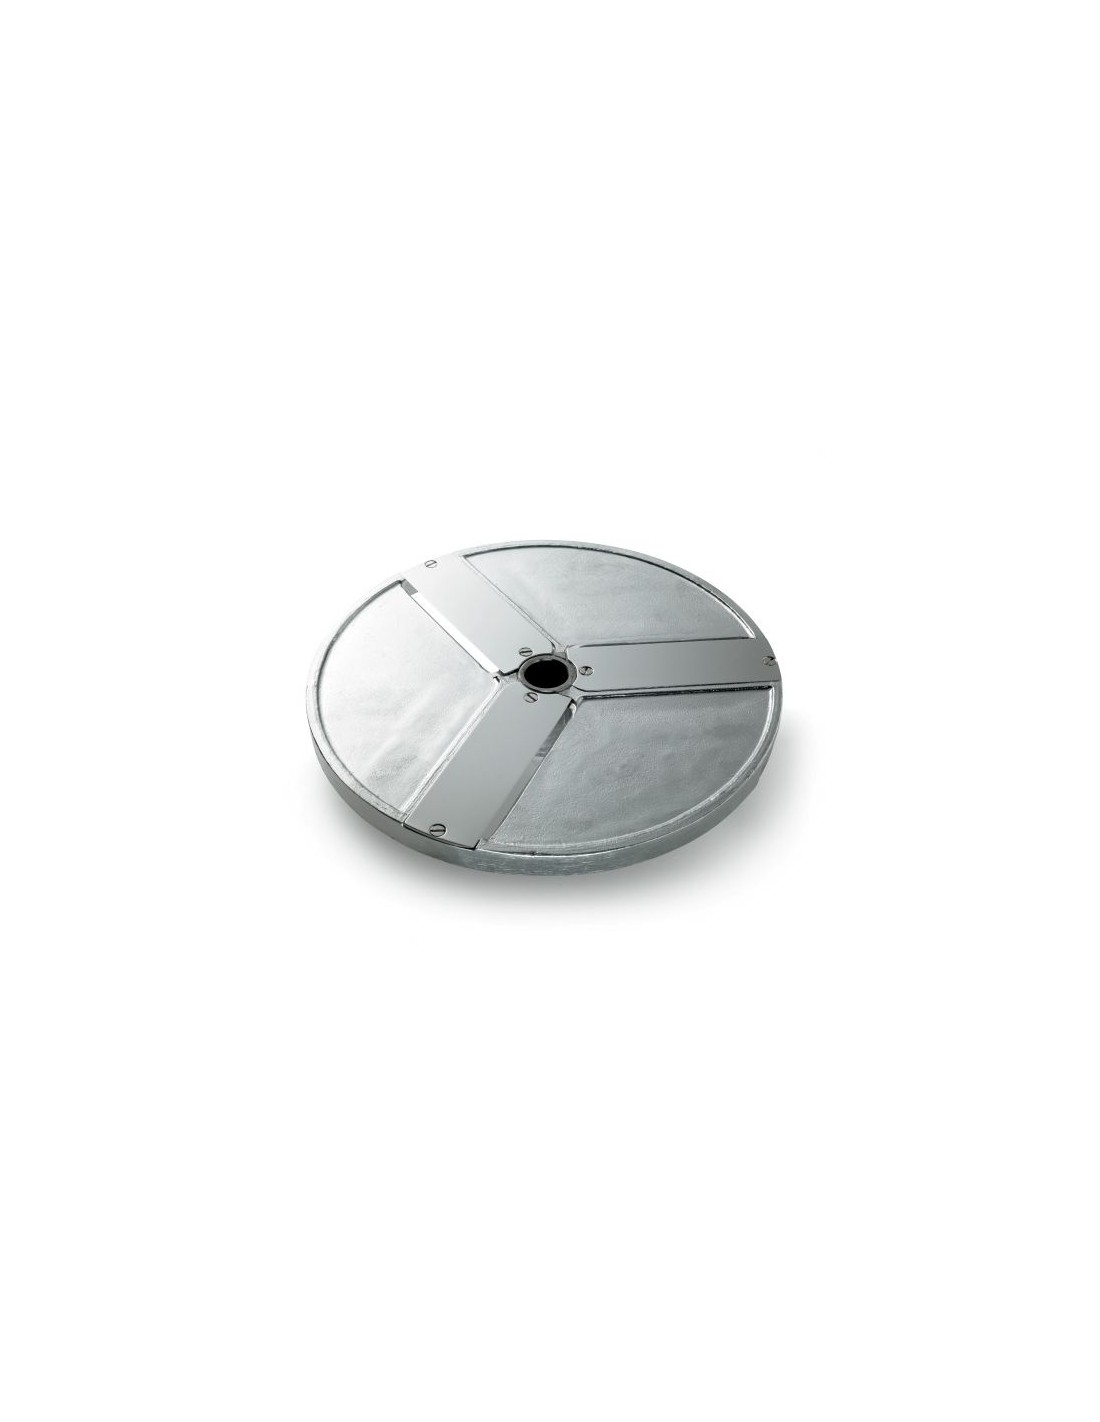 Disco per fette - Diametro mm 205 - Spessore taglio mm 140